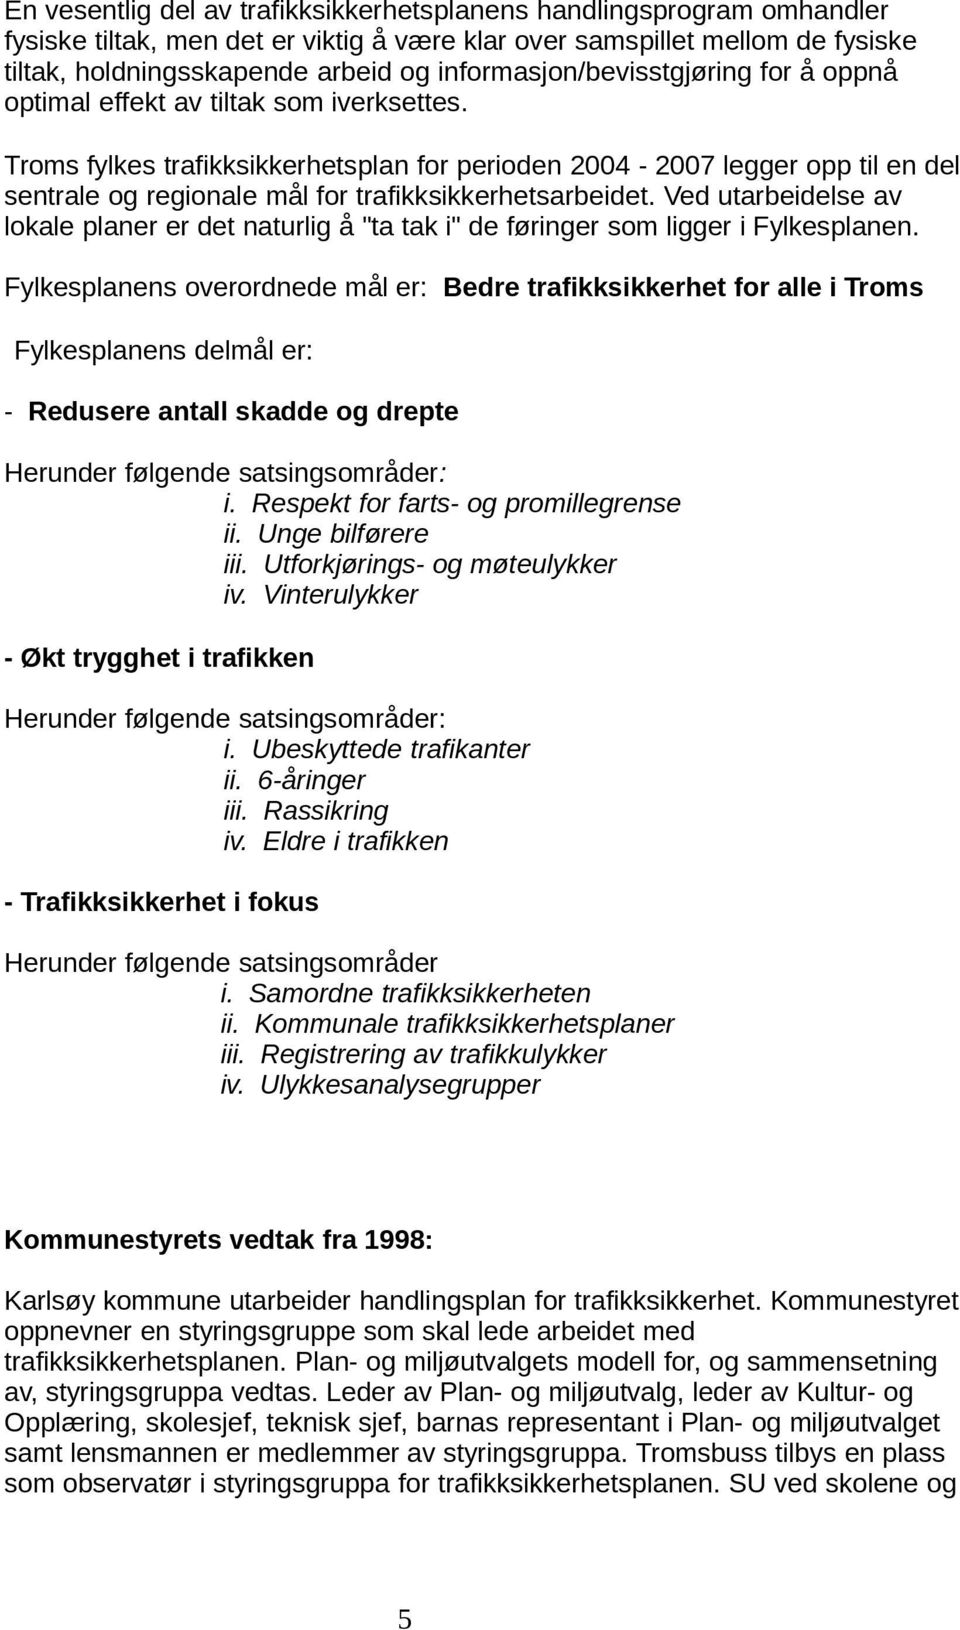 Troms fylkes trafikksikkerhetsplan for perioden 2004-2007 legger opp til en del sentrale og regionale mål for trafikksikkerhetsarbeidet.